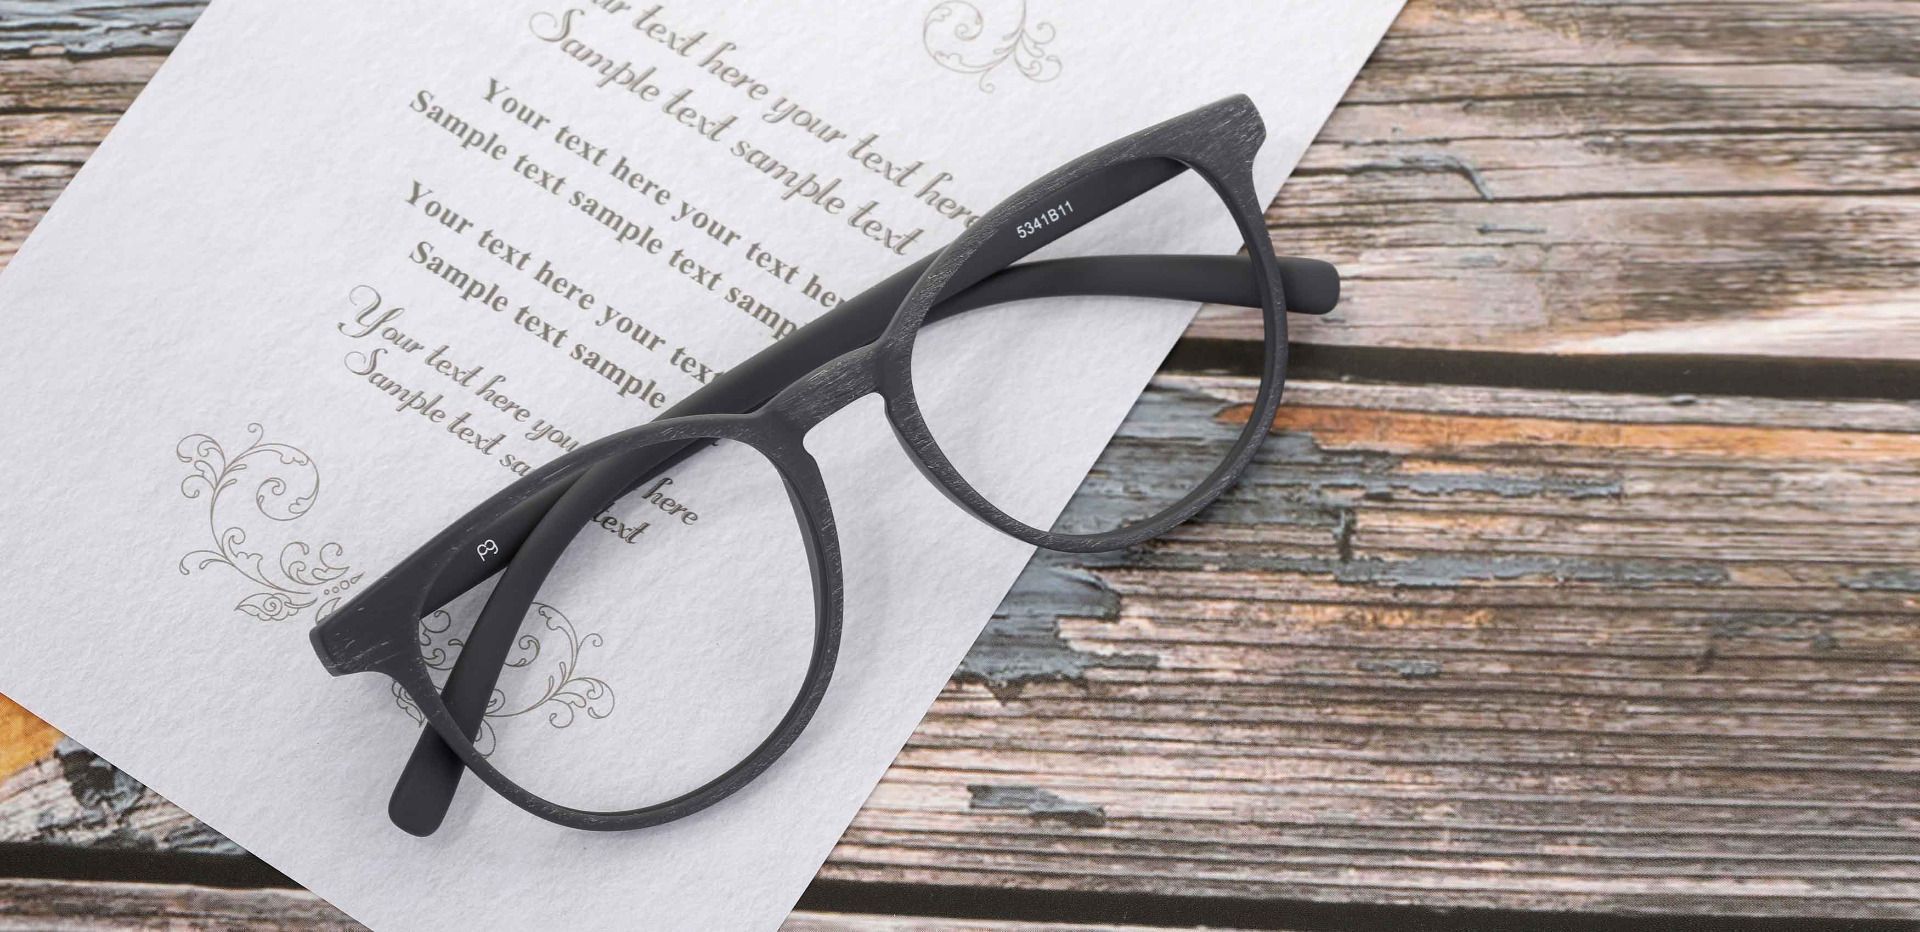 Corbett Oval Prescription Glasses - Gray